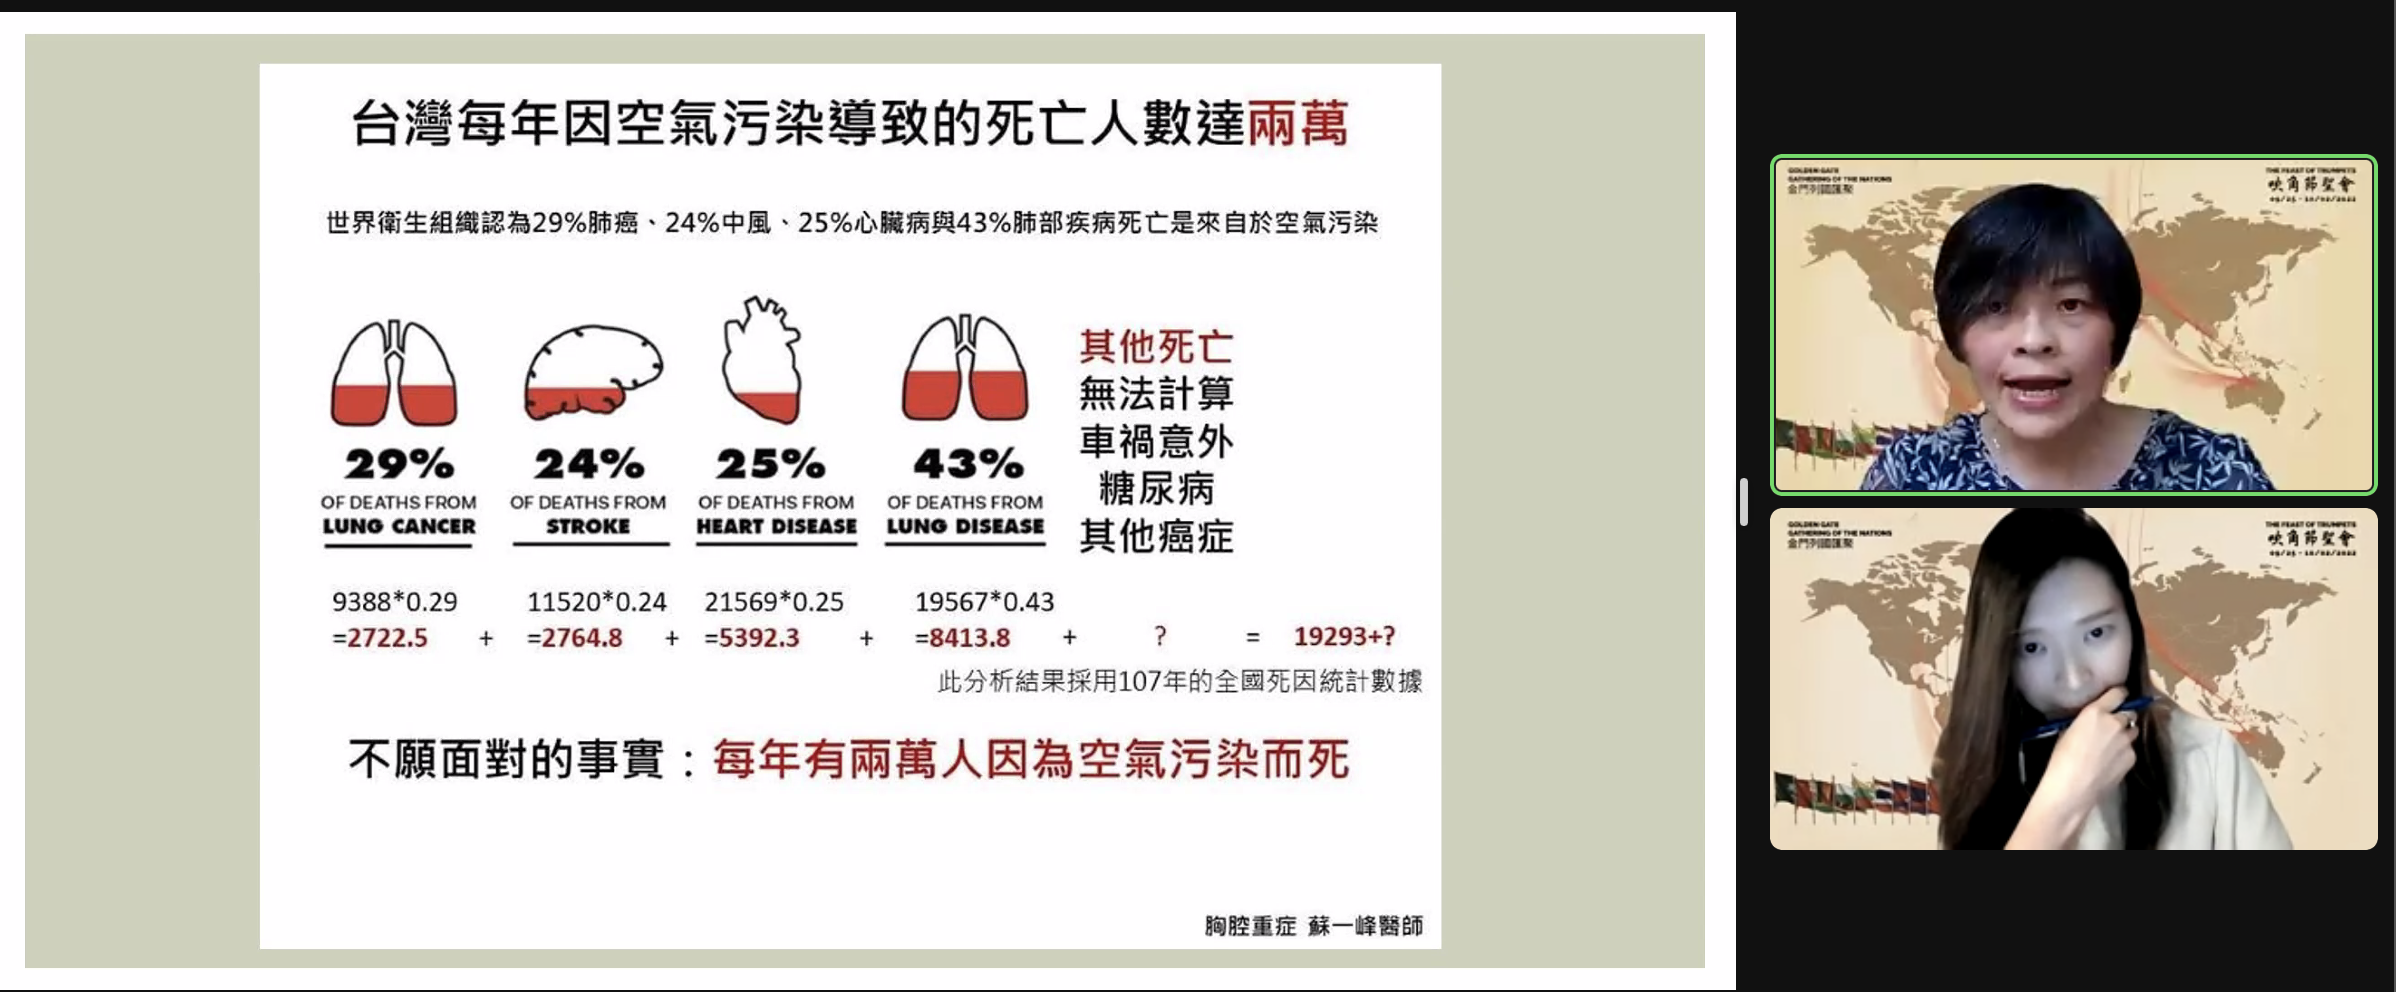 蘇一峰醫師研究台灣每年因空氣污染死亡人數達兩萬人。